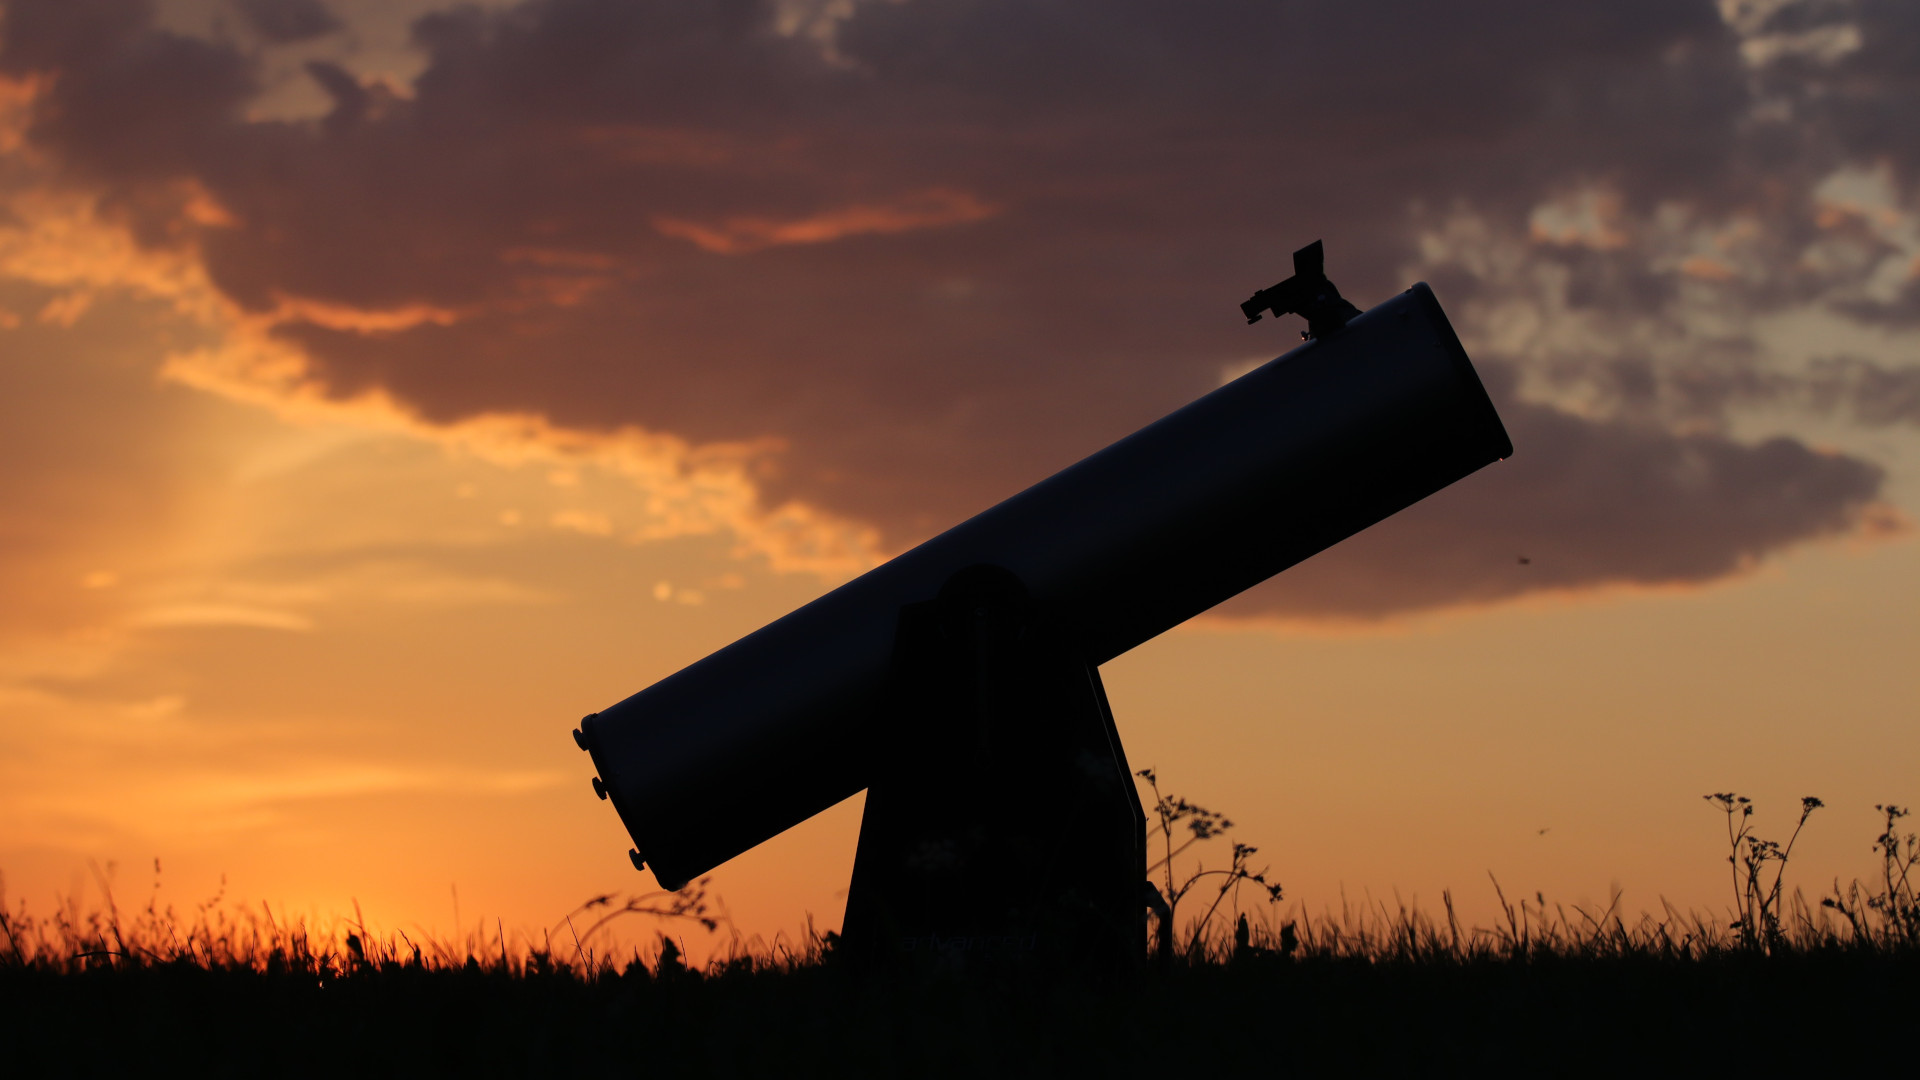 Dobsonian telescope / photo: Marcus Schenk